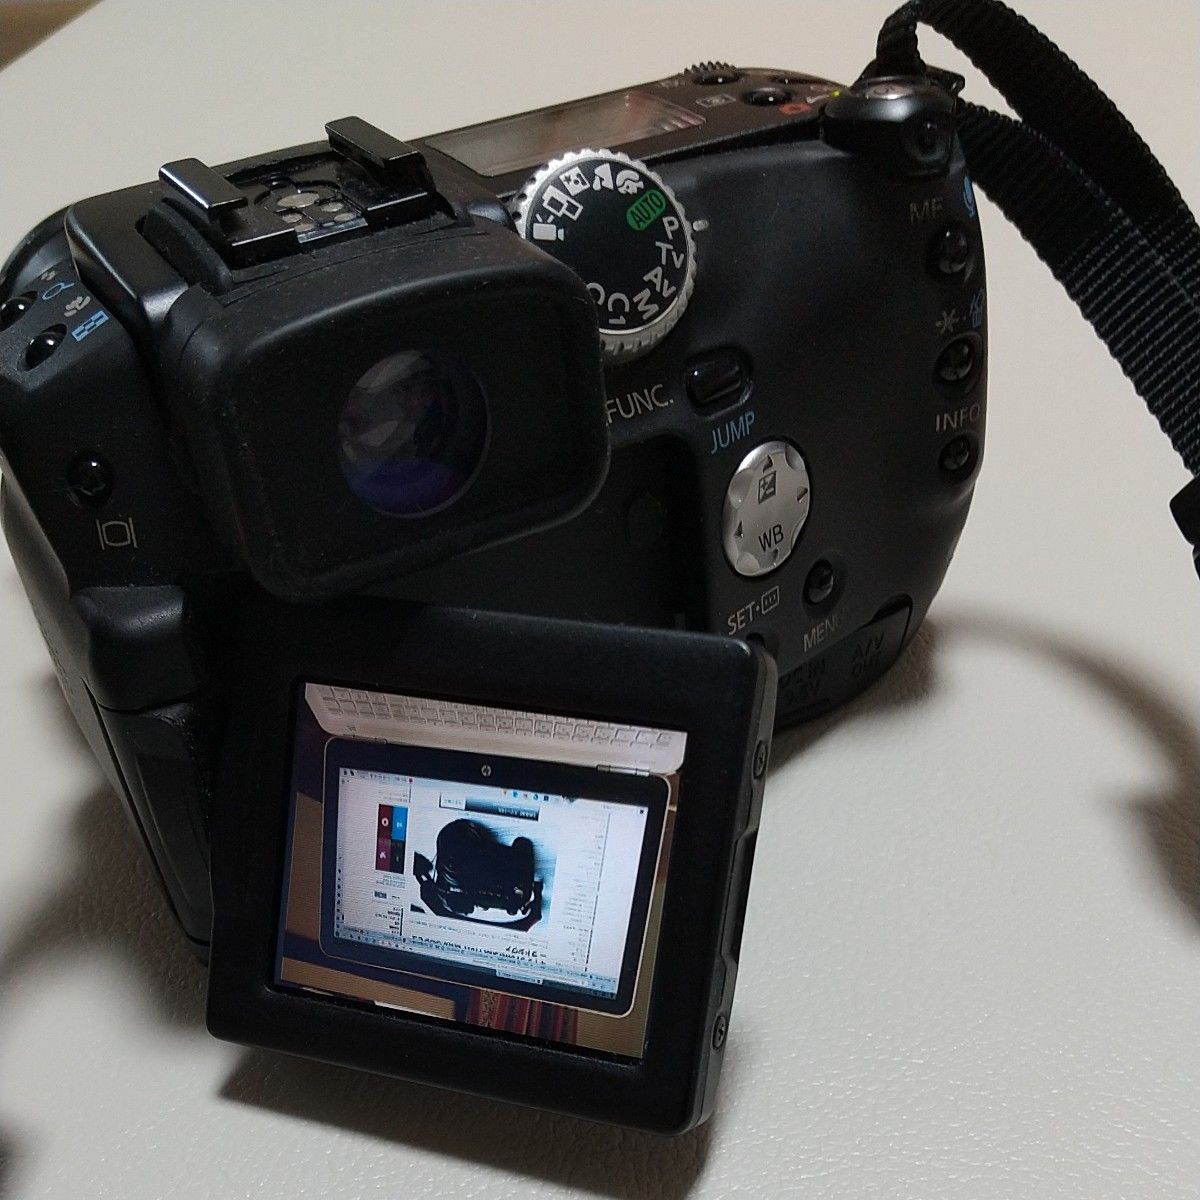 【再出品】Canon キャノン コンパクトデジタルカメラ Power shot Pro1 Lレンズ搭載 蛍石